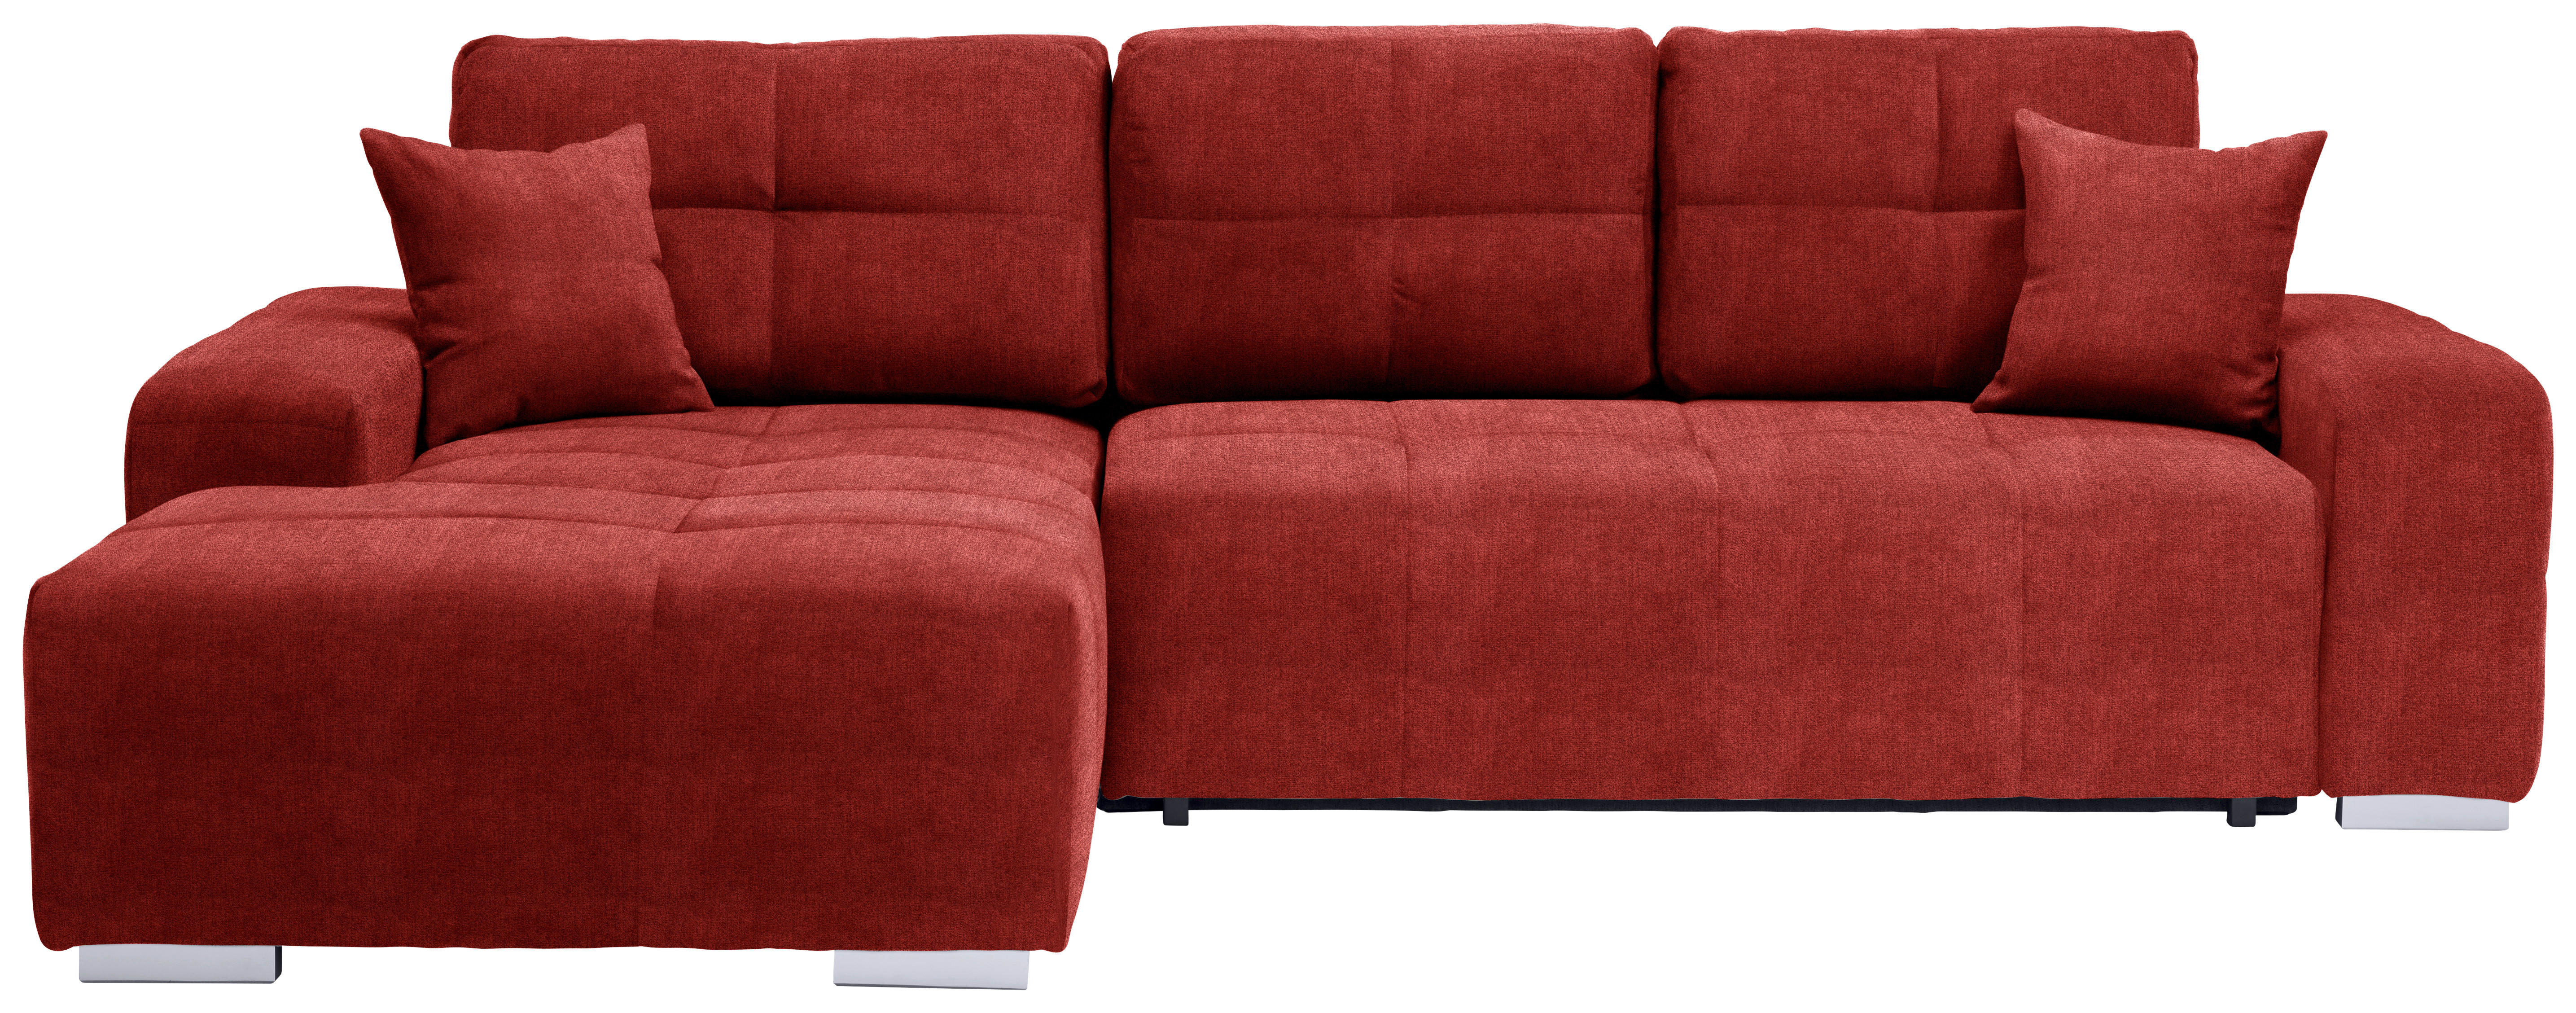 ECKSOFA Rot Webstoff  - Silberfarben/Rot, Design, Kunststoff/Textil (194/280cm) - Carryhome